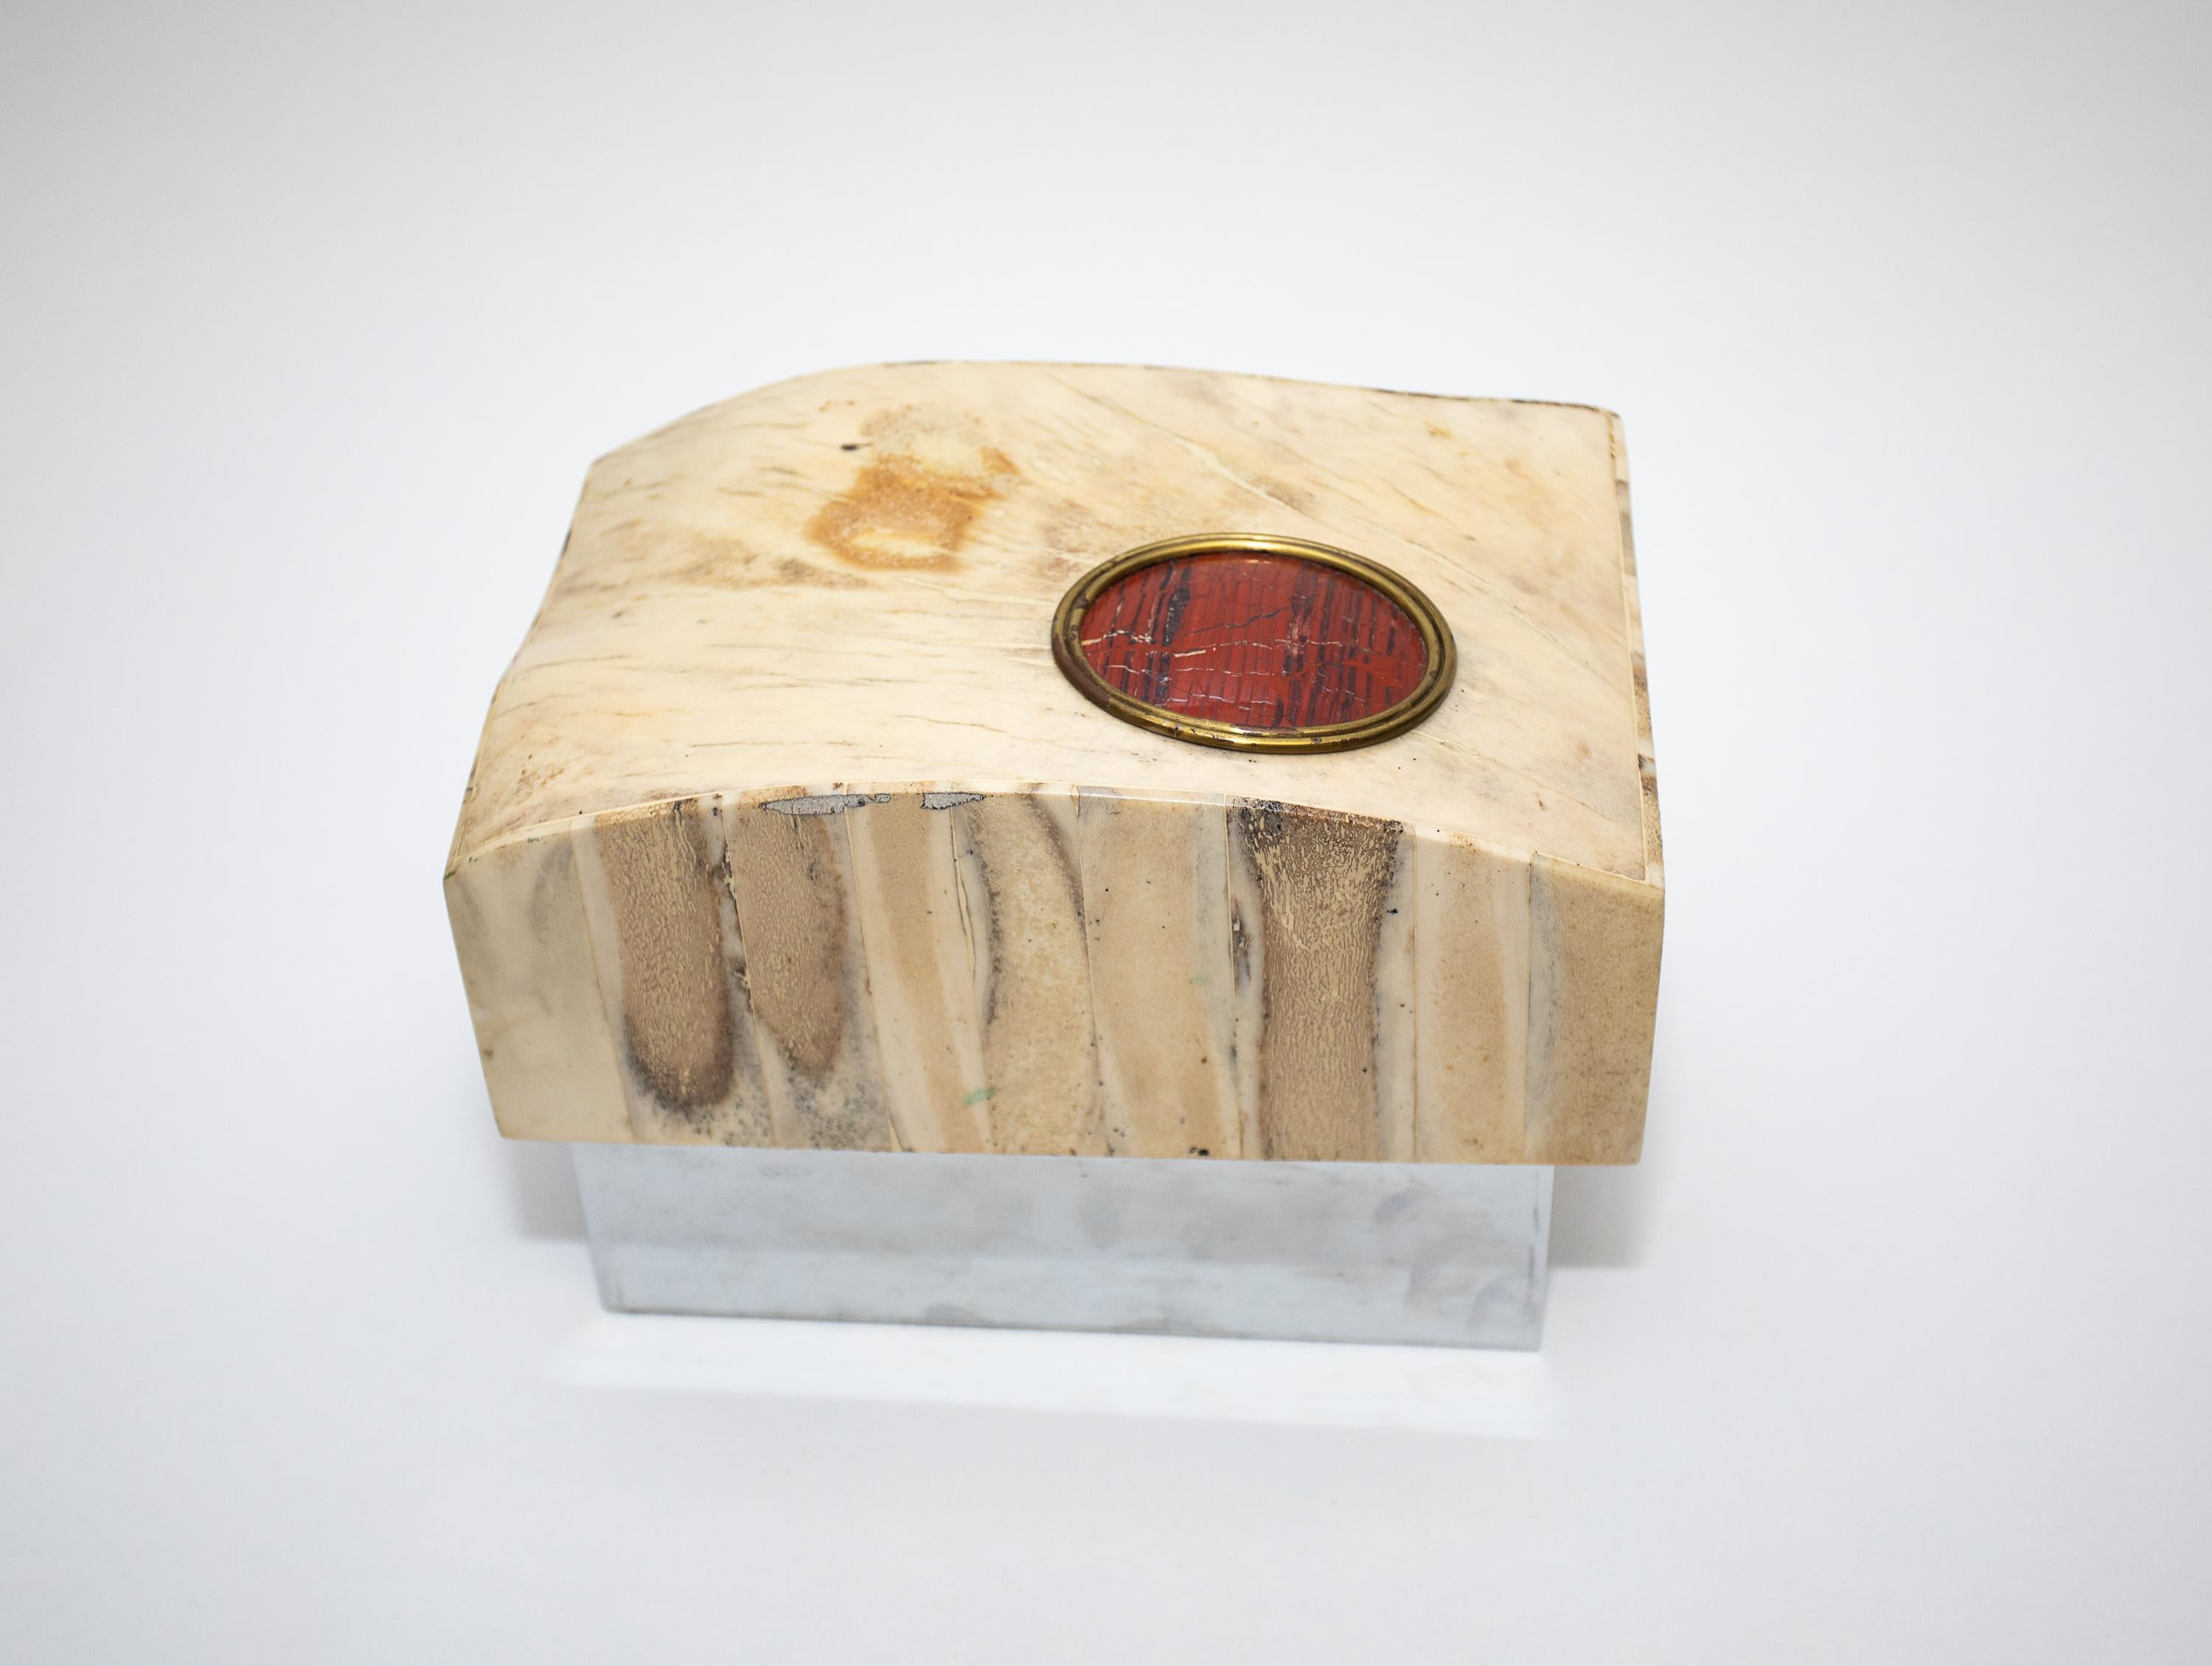 Une boîte à grande échelle
matériaux exotiques et form A
Intérieur doublé.